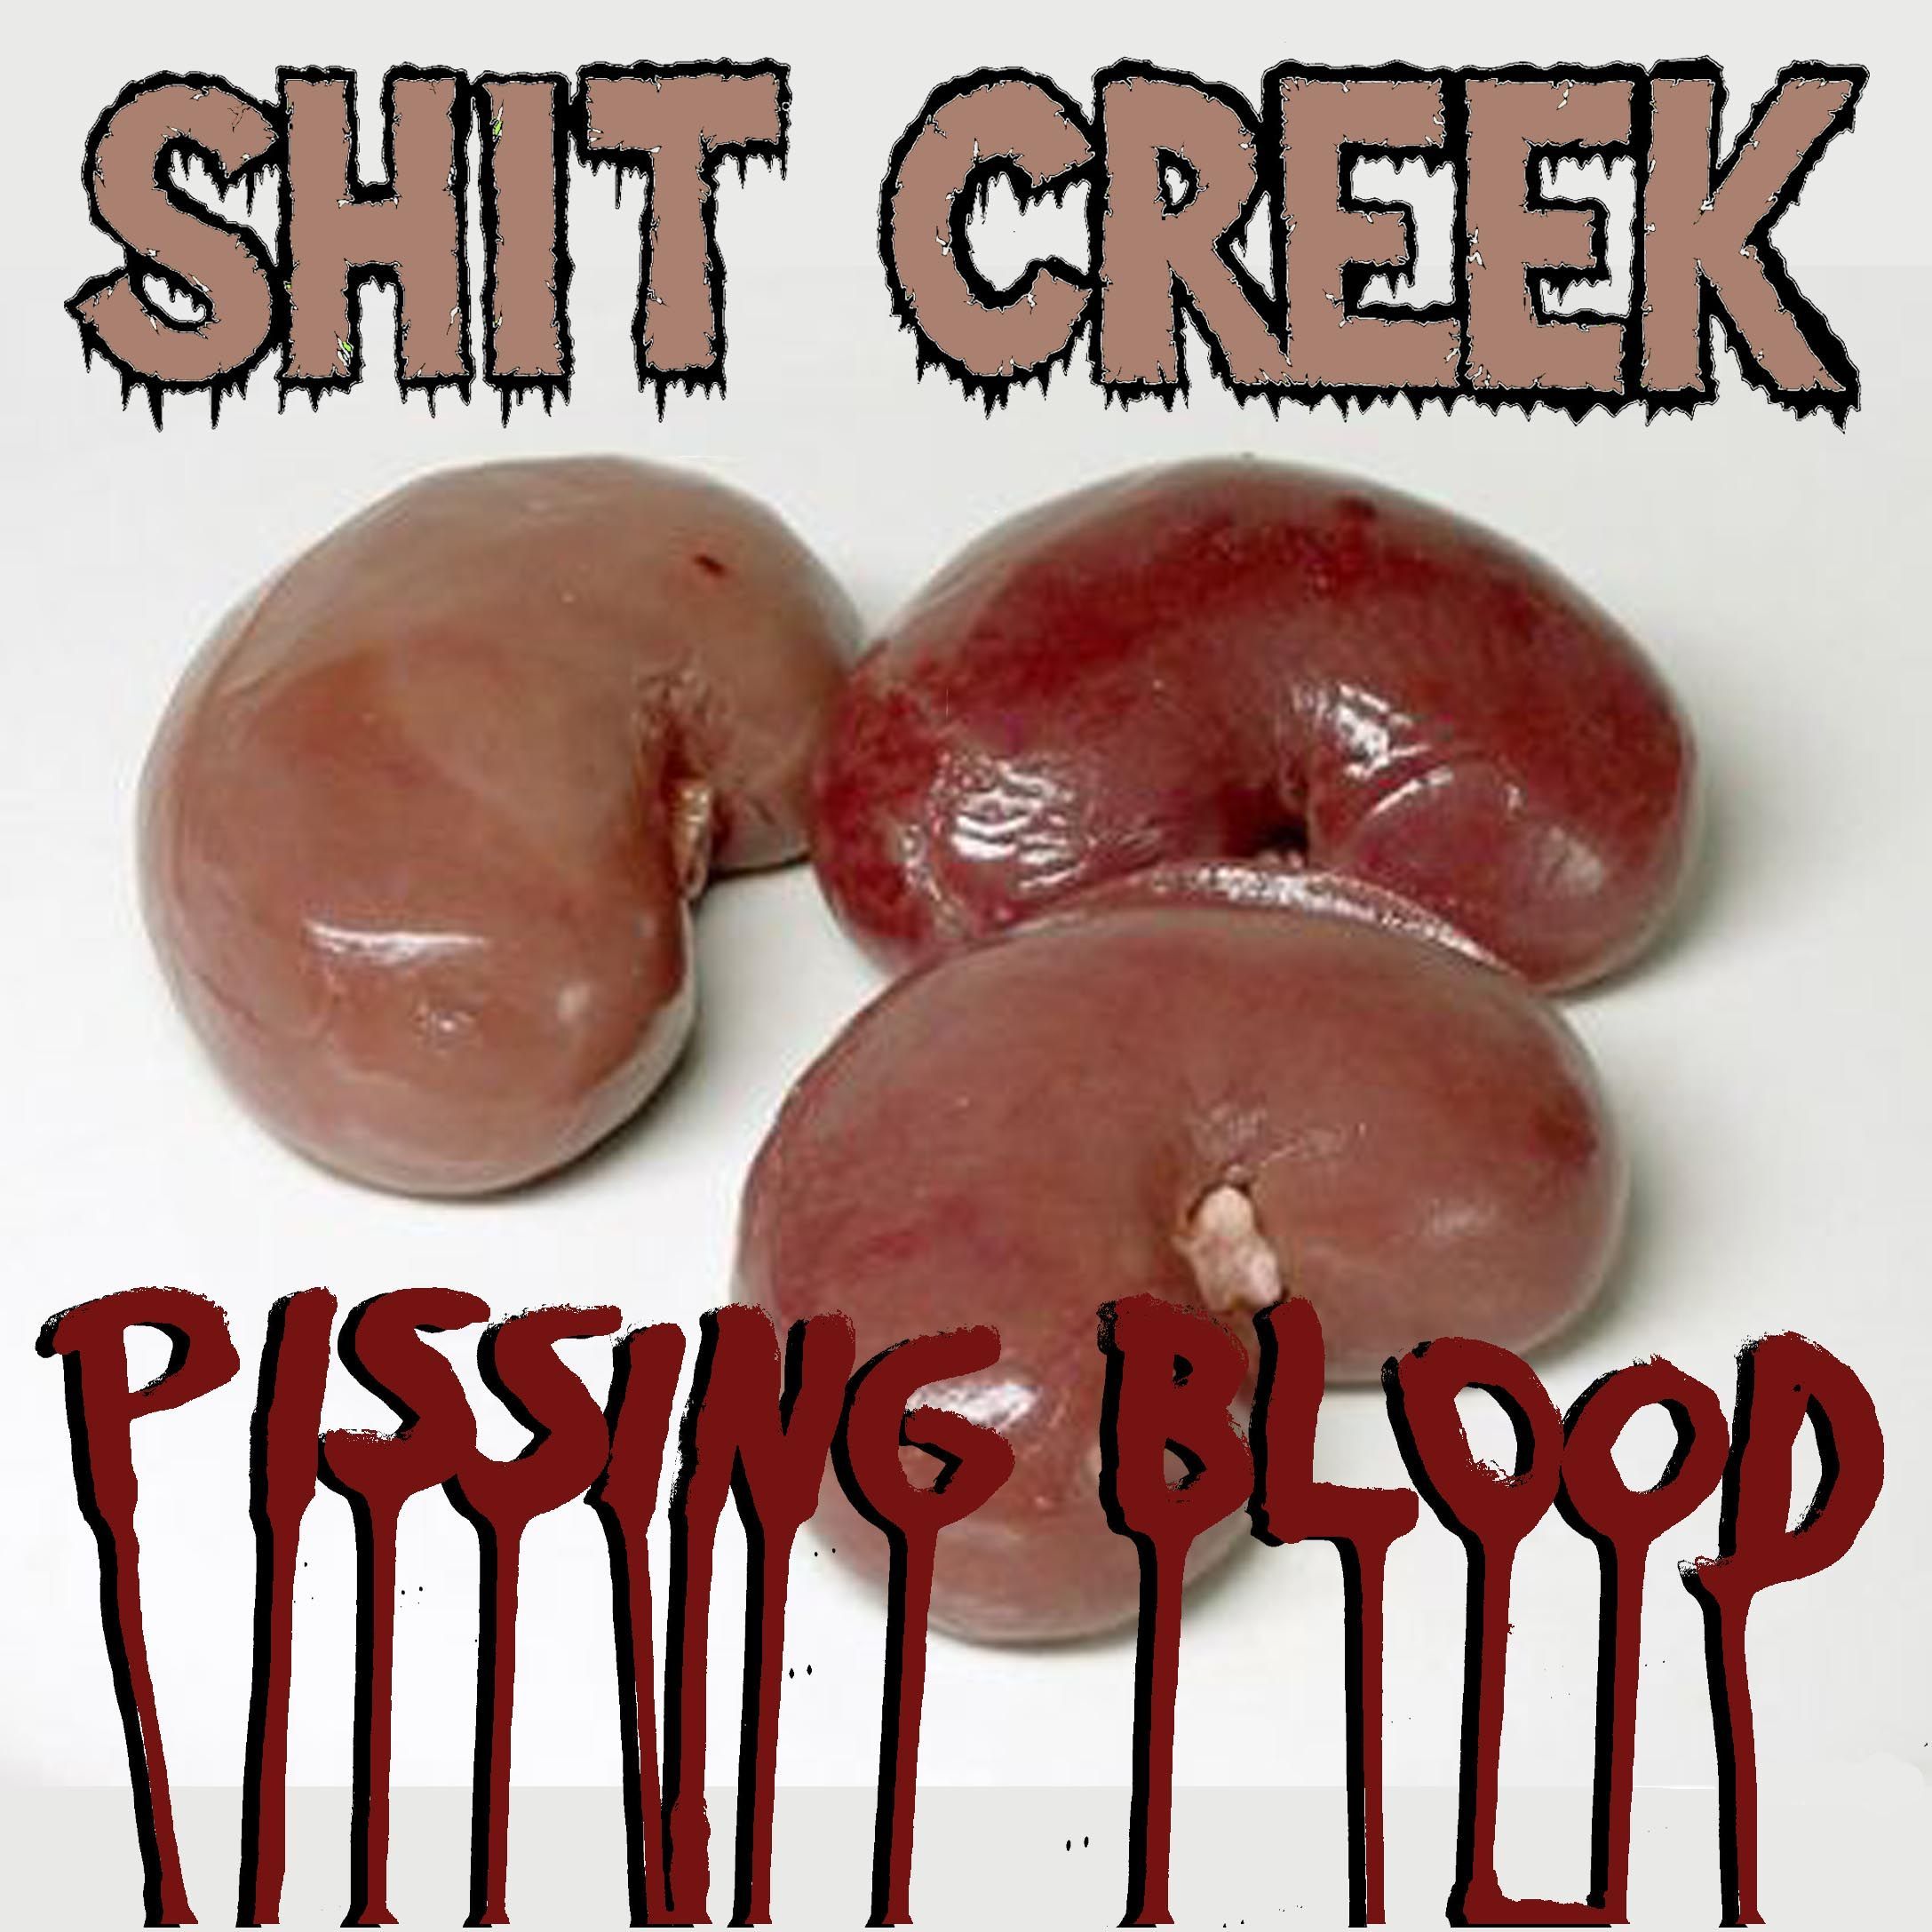 Bad M. F. reccomend Pissing blood pics